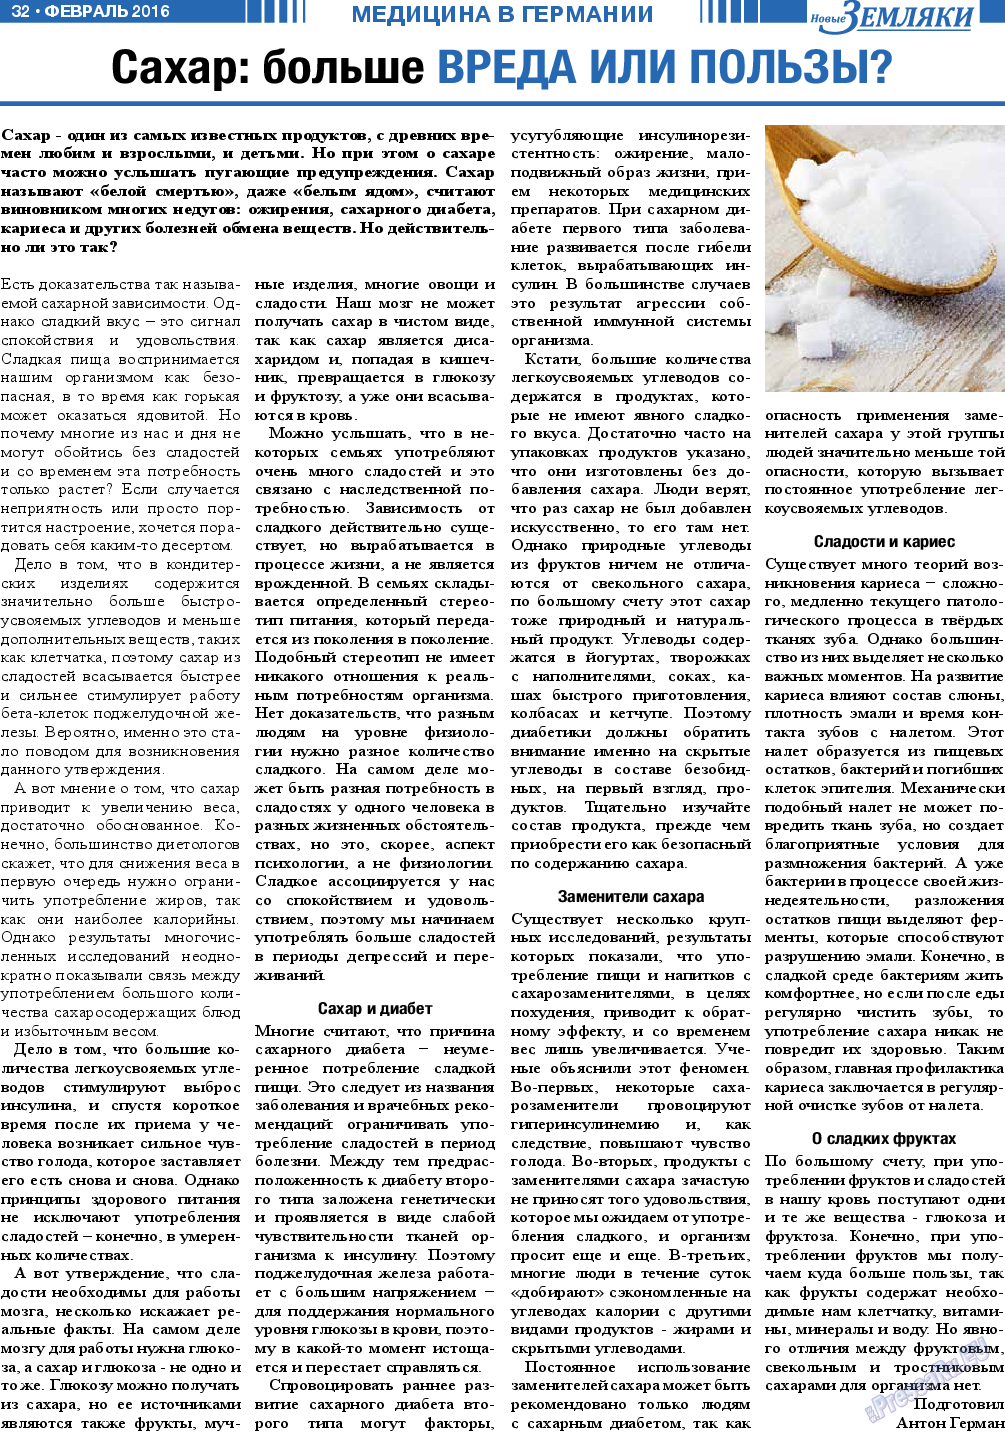 Новые Земляки, газета. 2016 №2 стр.32